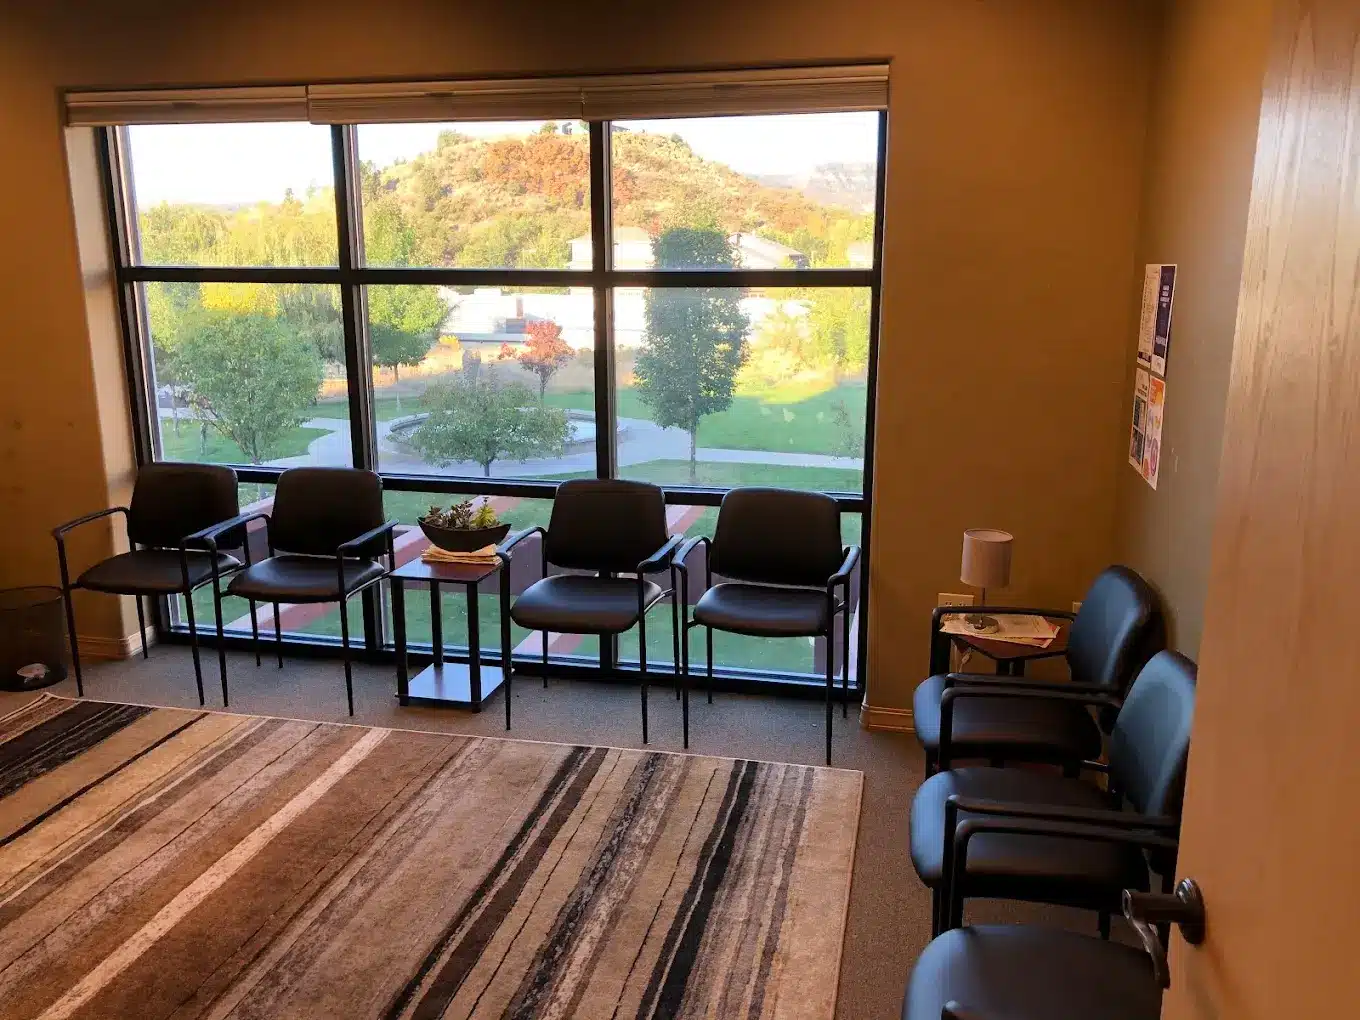 Interior of Durango Clinic